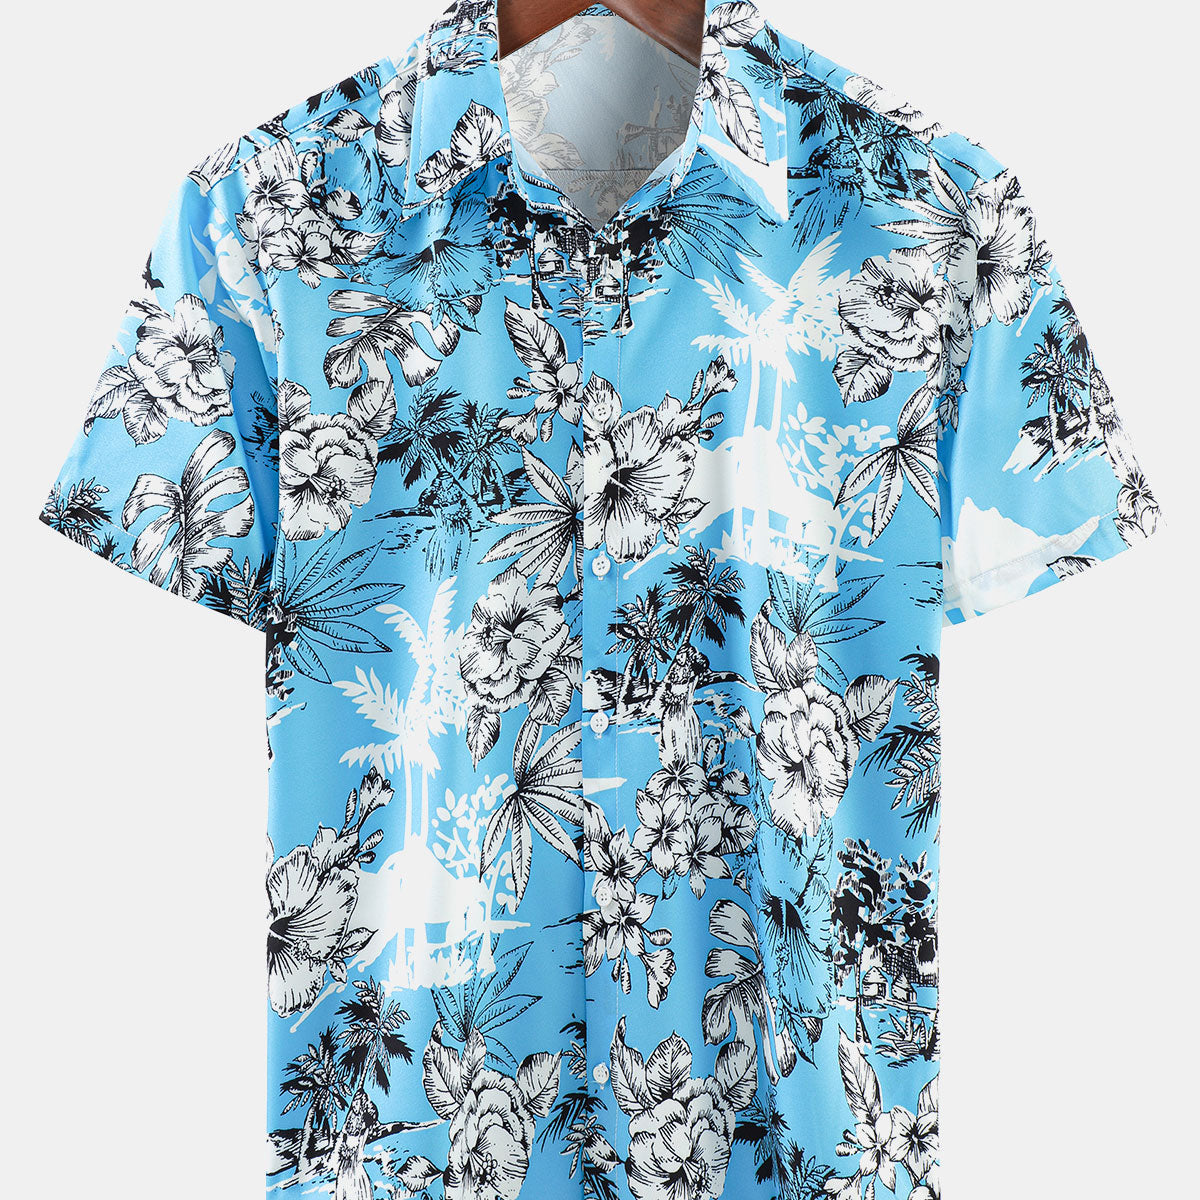 Men's Summer Holiday Tropical Print Button Up Hawaiian Short Sleeve Shirt